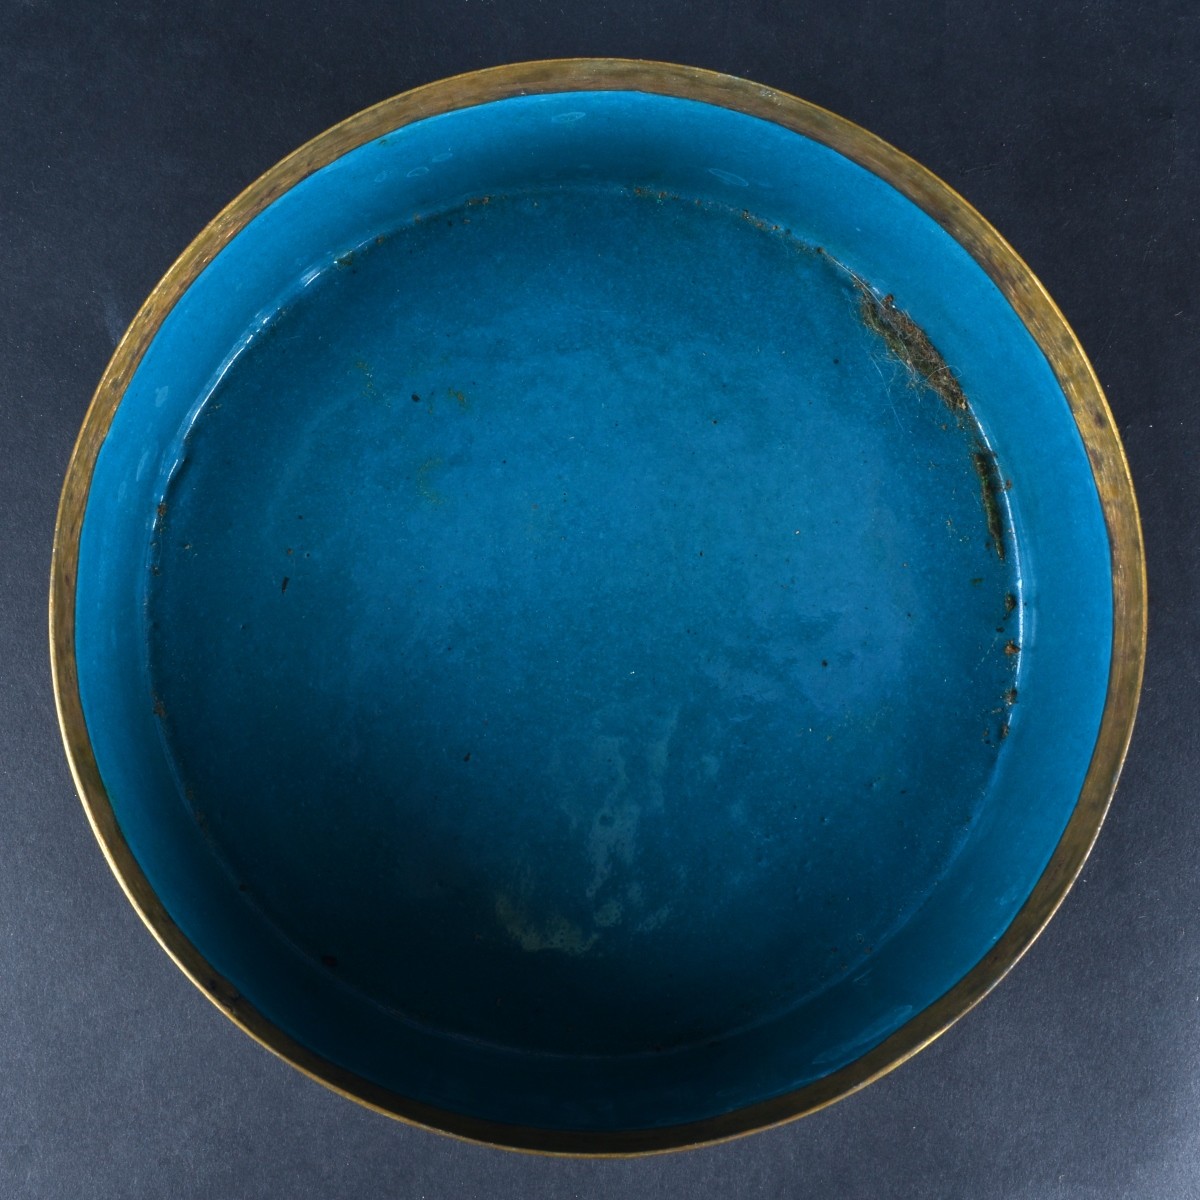 Oriental Tableware